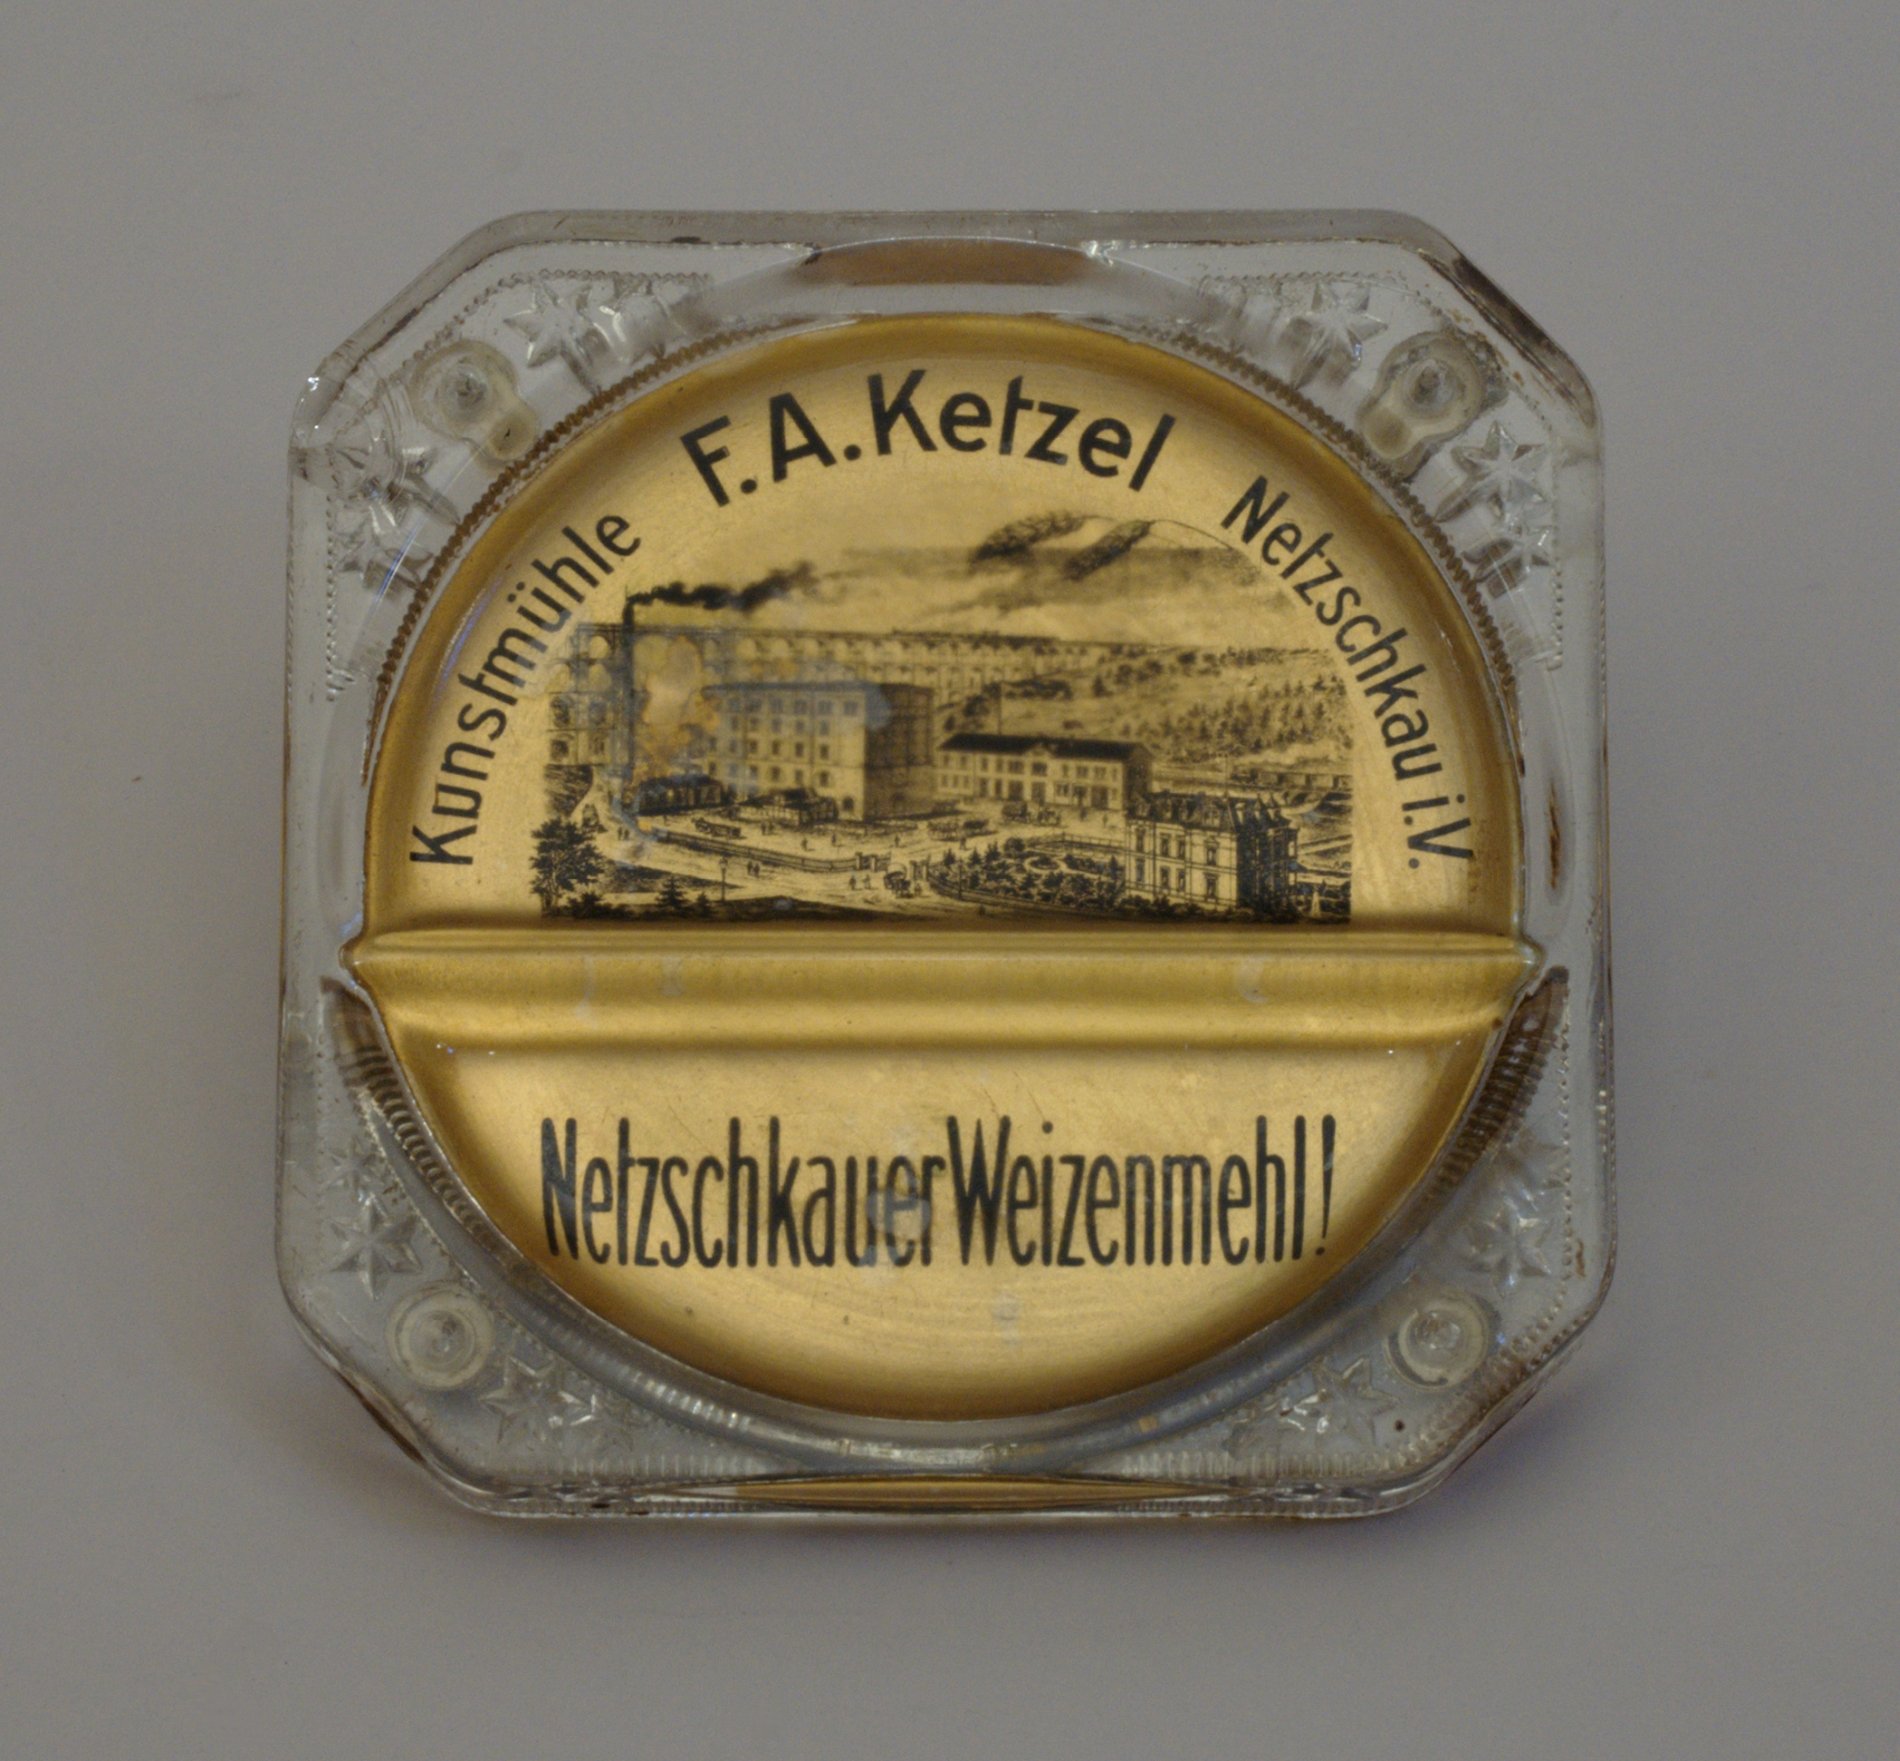 Zahlteller mit Werbung für "Netzschkauer Weizenmehl" (Stiftung Domäne Dahlem - Landgut und Museum, Weiternutzung nur mit Genehmigung des Museums CC BY-NC-SA)